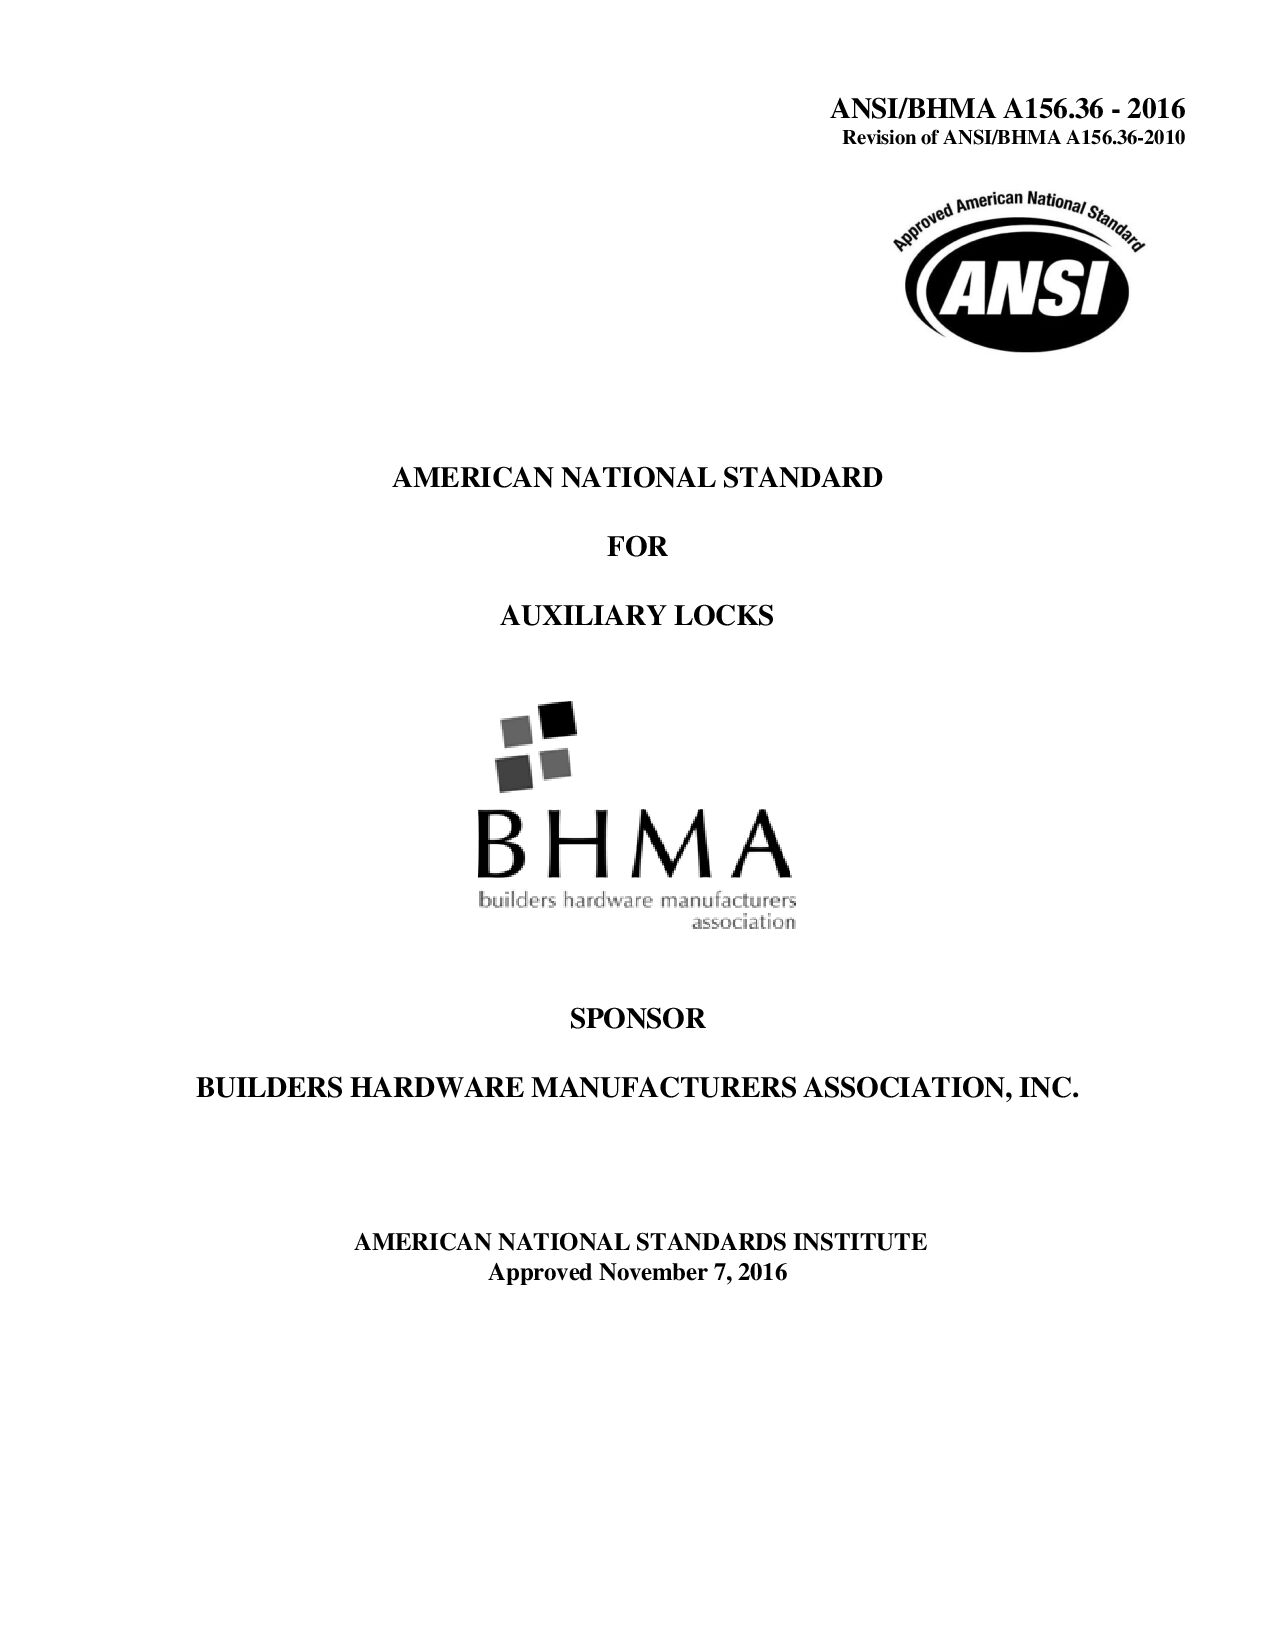 BHMA A156.36-2016封面图